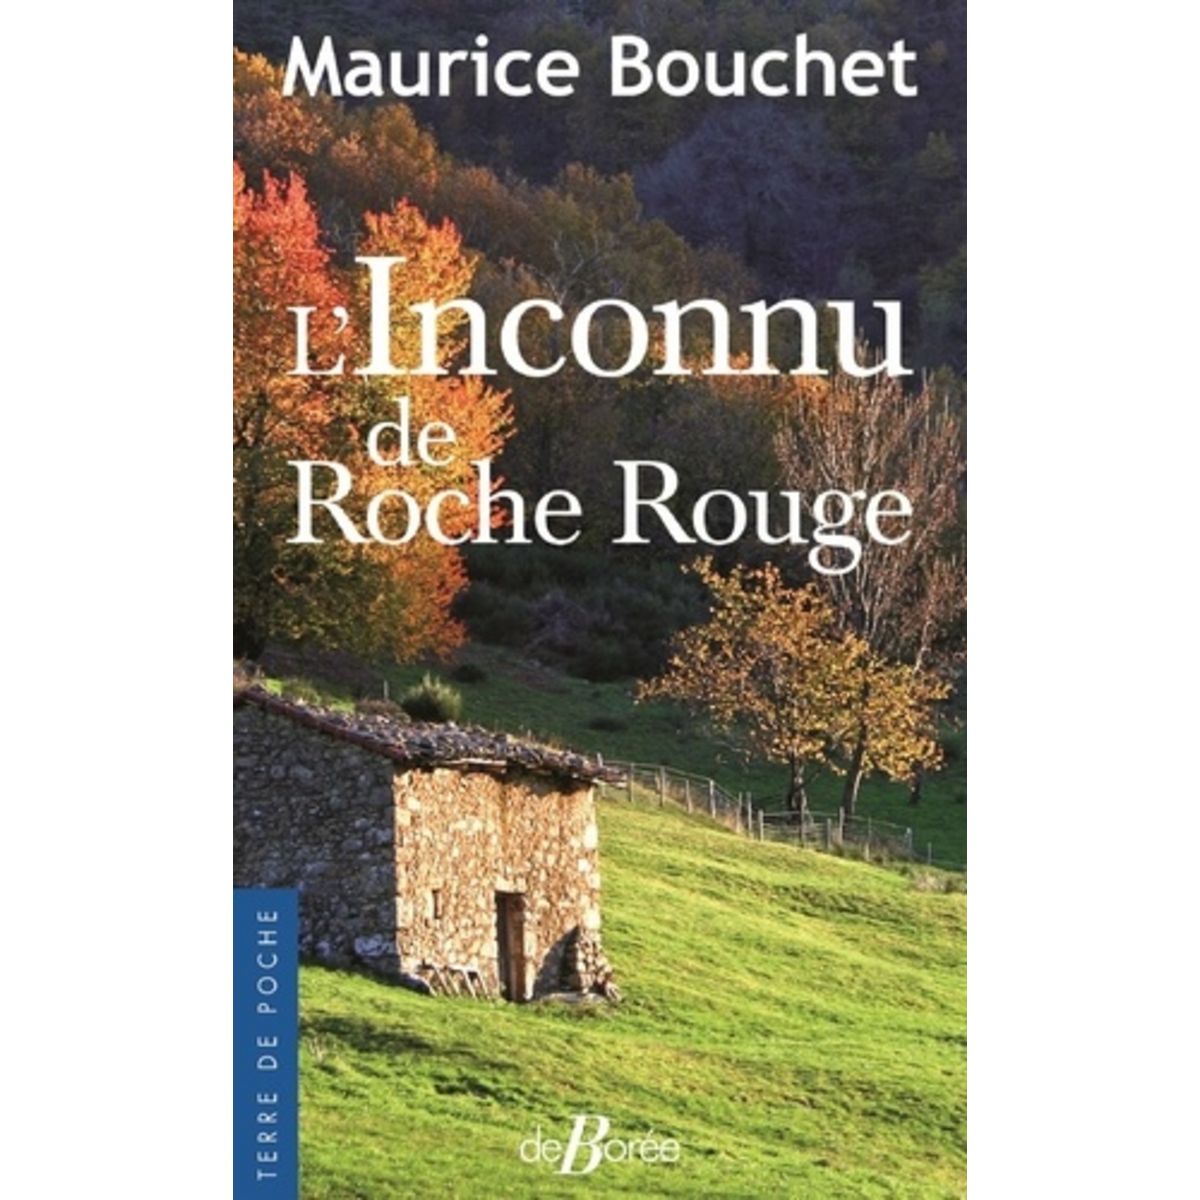  L'INCONNU DE ROCHE ROUGE, Bouchet Maurice